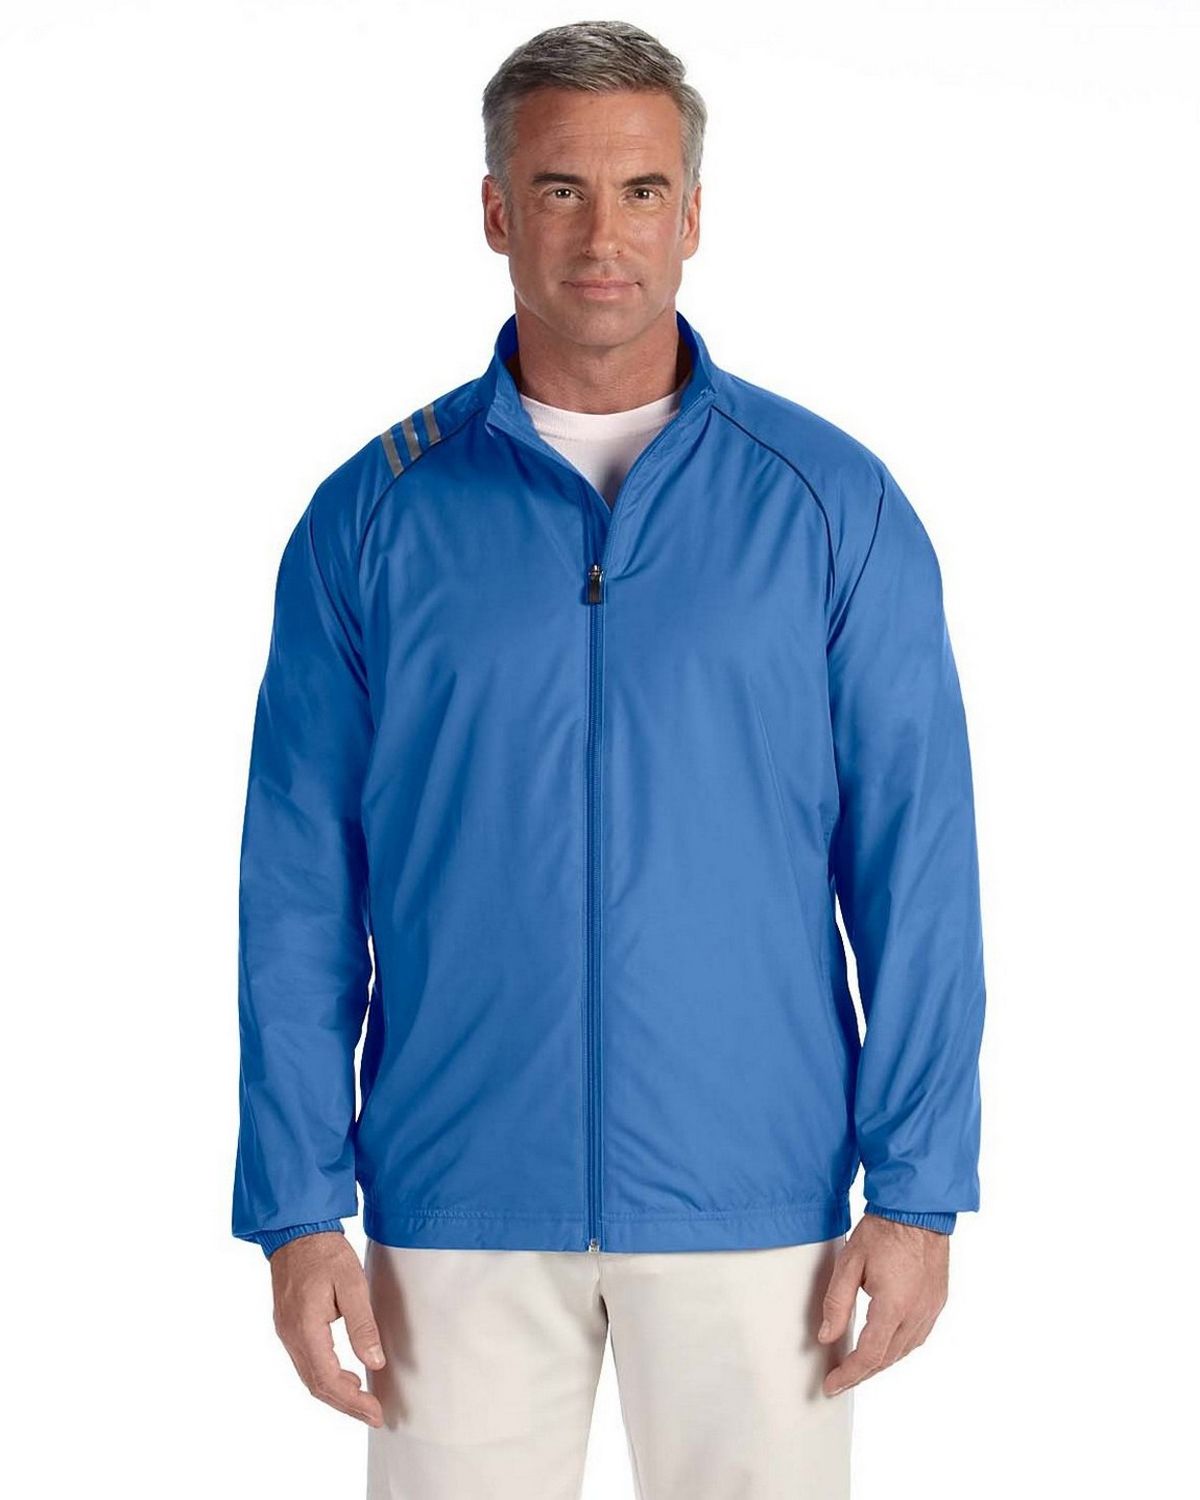 Adidas Golf A169 Men's Jacket